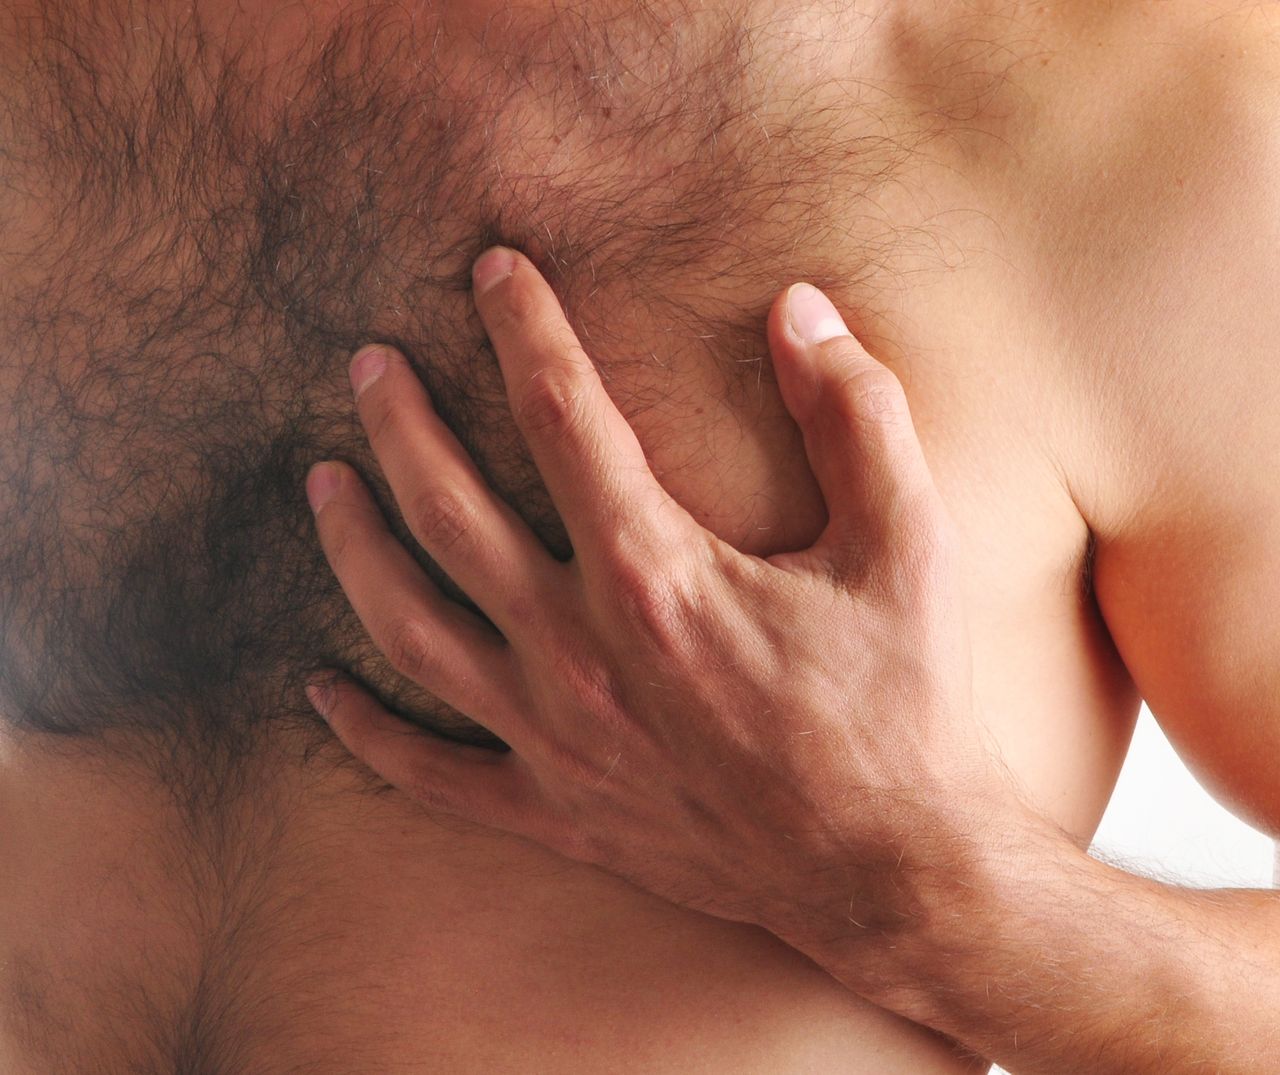 Kurza klatka piersiowa - jak ją leczyć? Przyczyny, objawy, korekcja